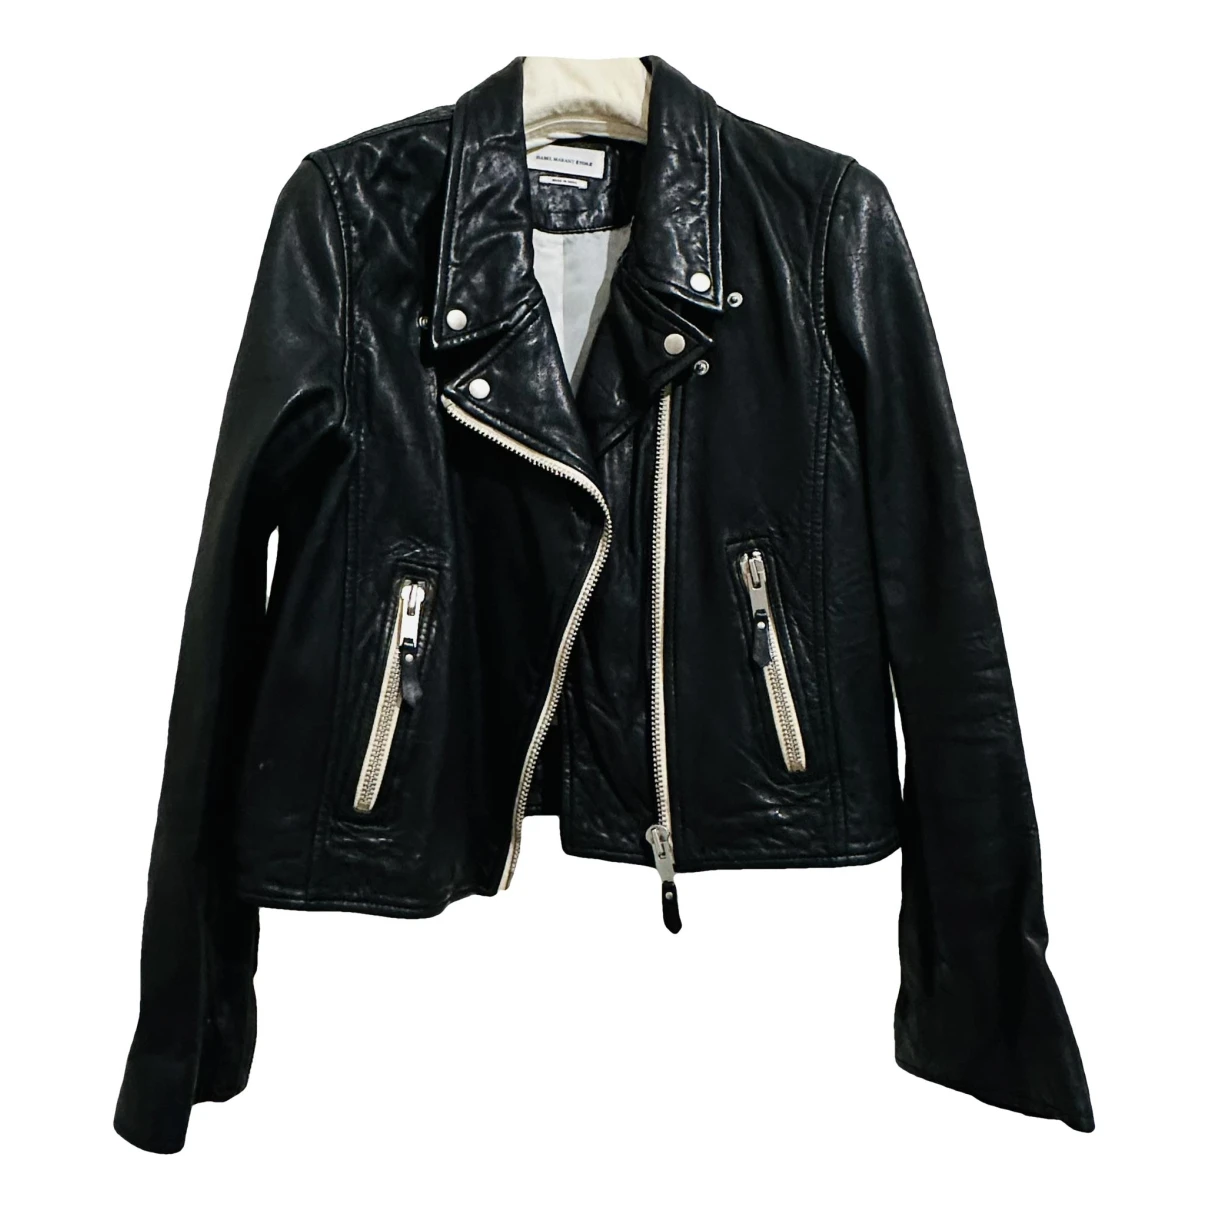 Pre-owned Isabel Marant Étoile Leather Short Vest In Black